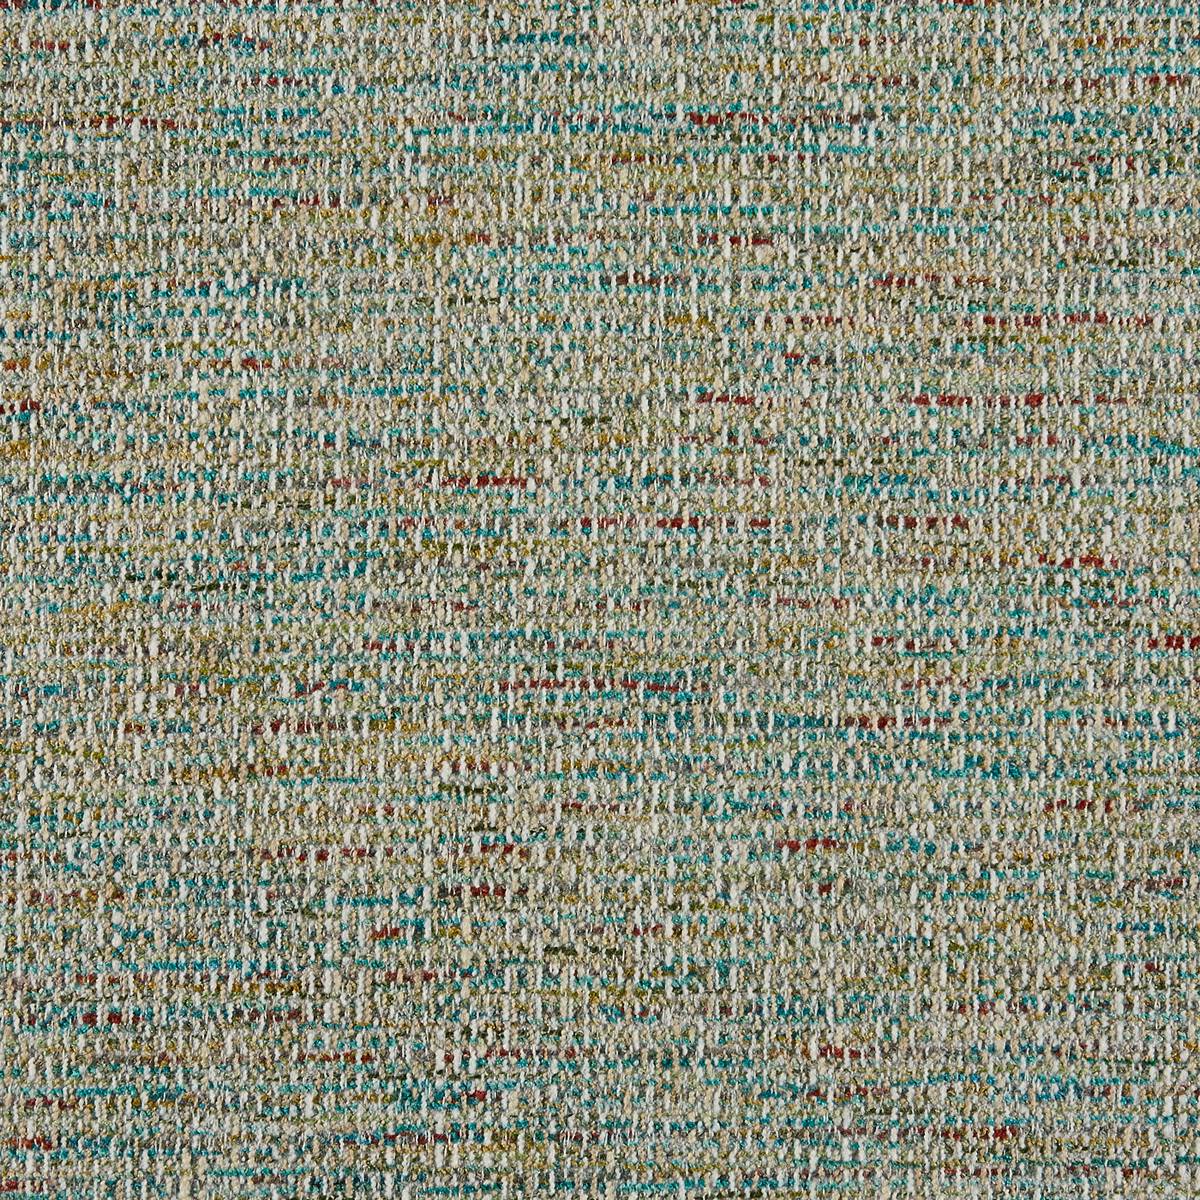 Marilyn Dragonfly Fabric by Prestigious Textiles